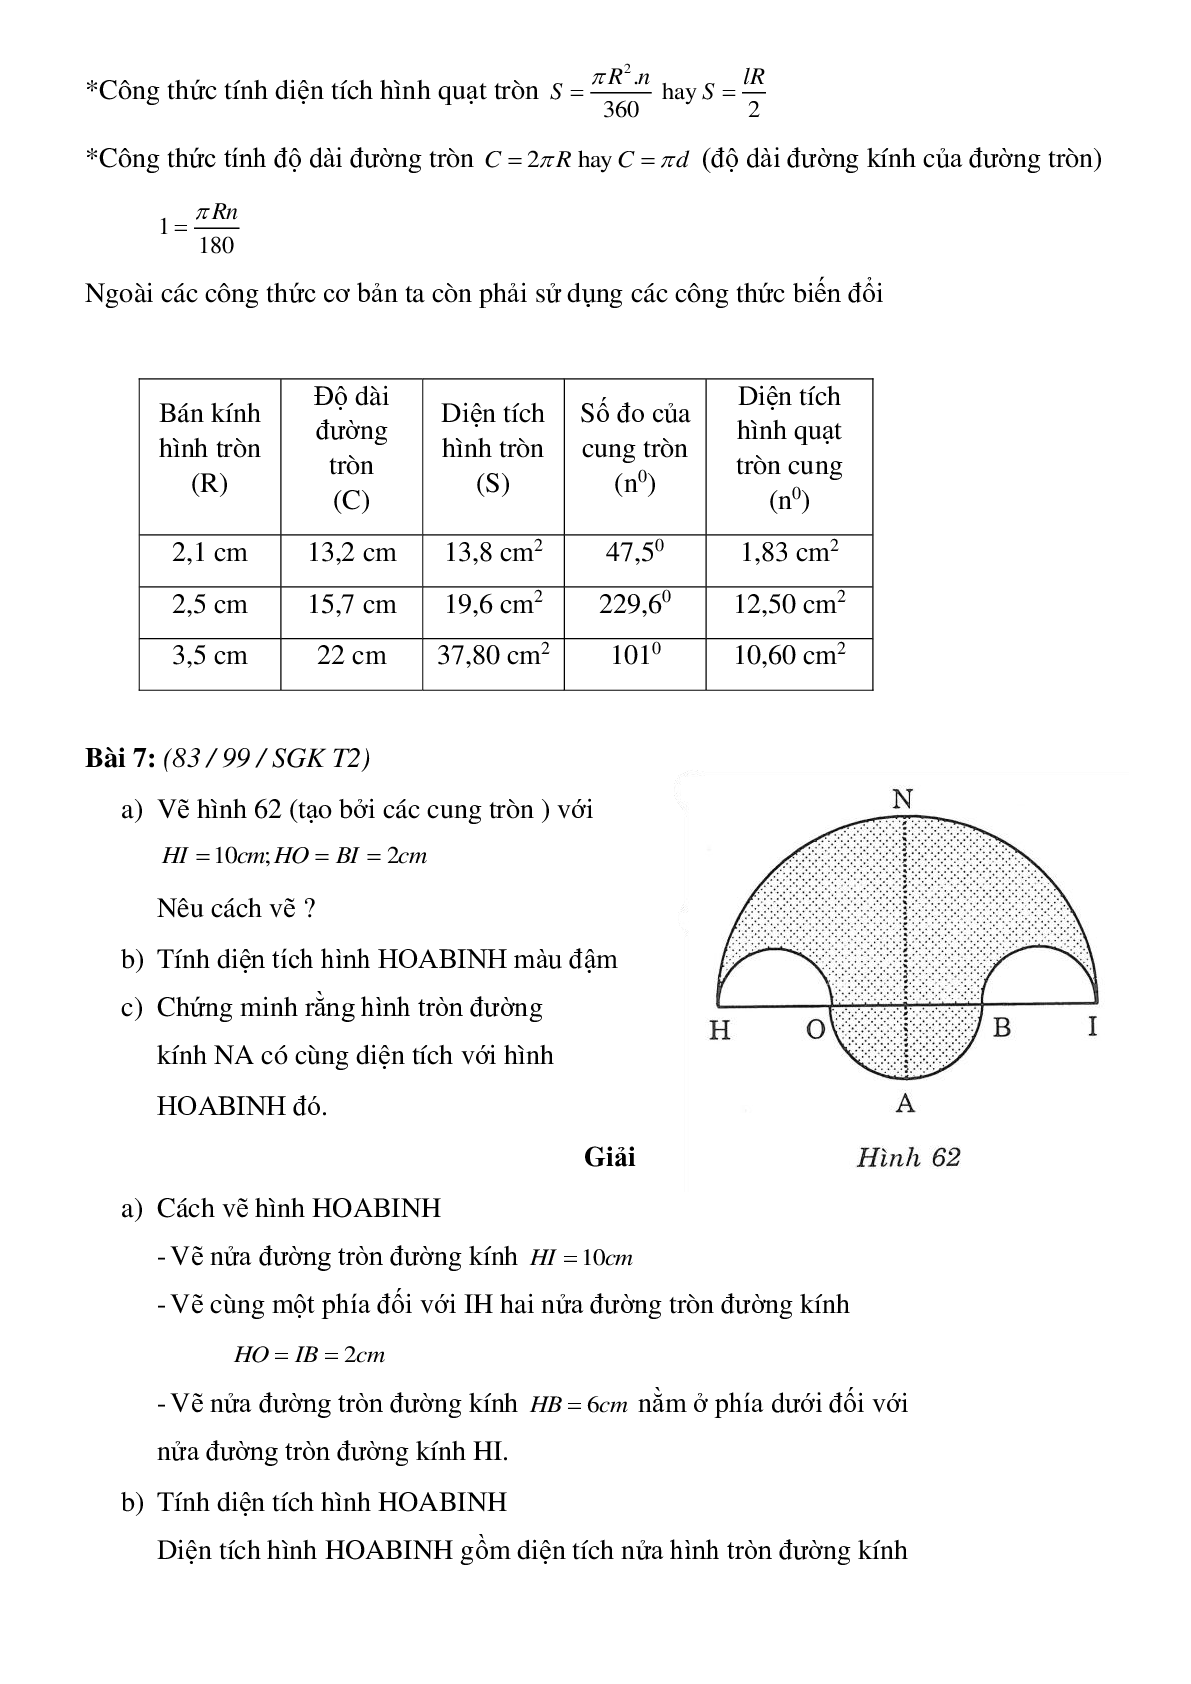 50 Bài tập Diện tích hình tròn, hình quạt tròn (có đáp án)- Toán 9 (trang 4)